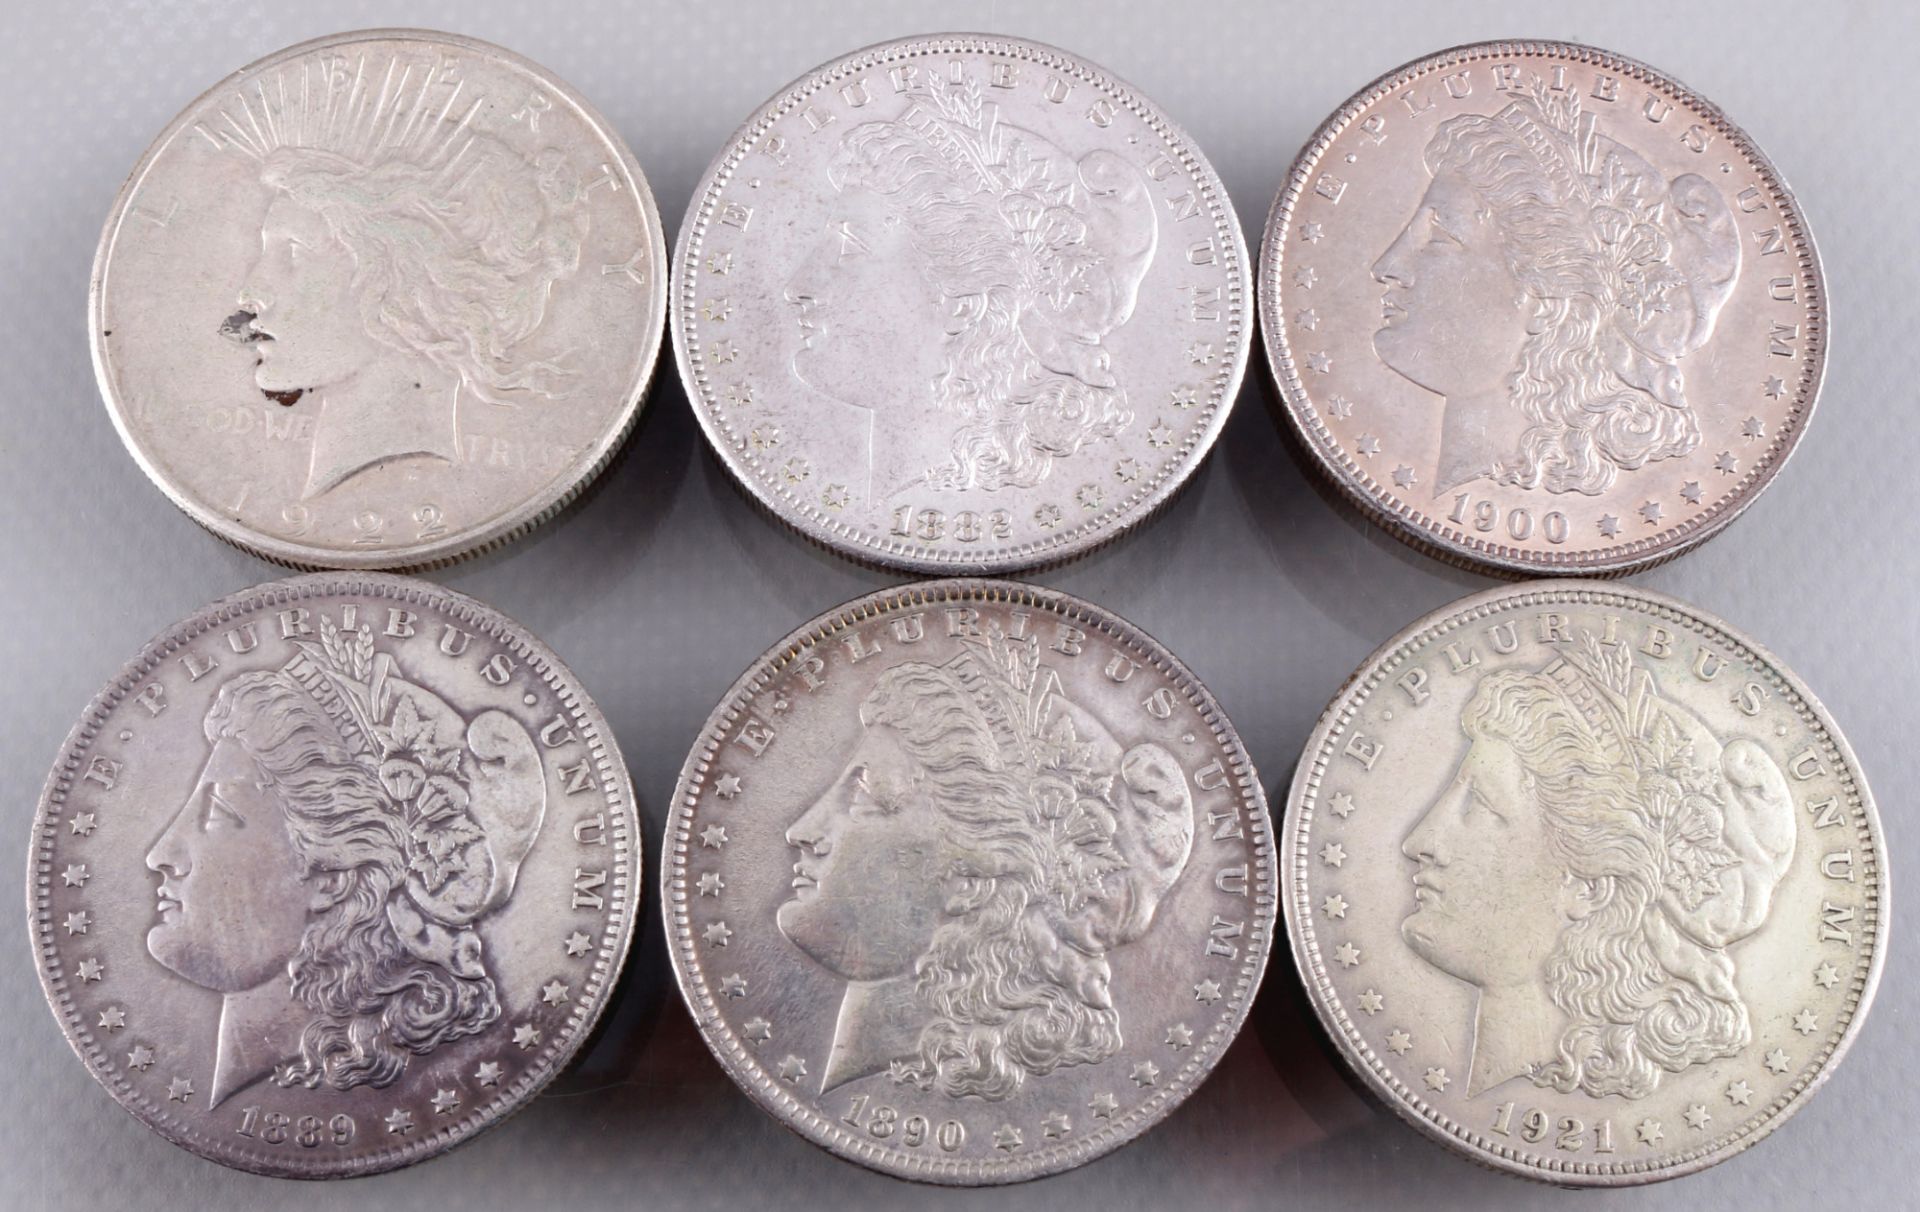 6 silver coins - Morgan Dollar 1882 - 1922, Silbermünzen - Morgan Dollar 1882 - 1922,